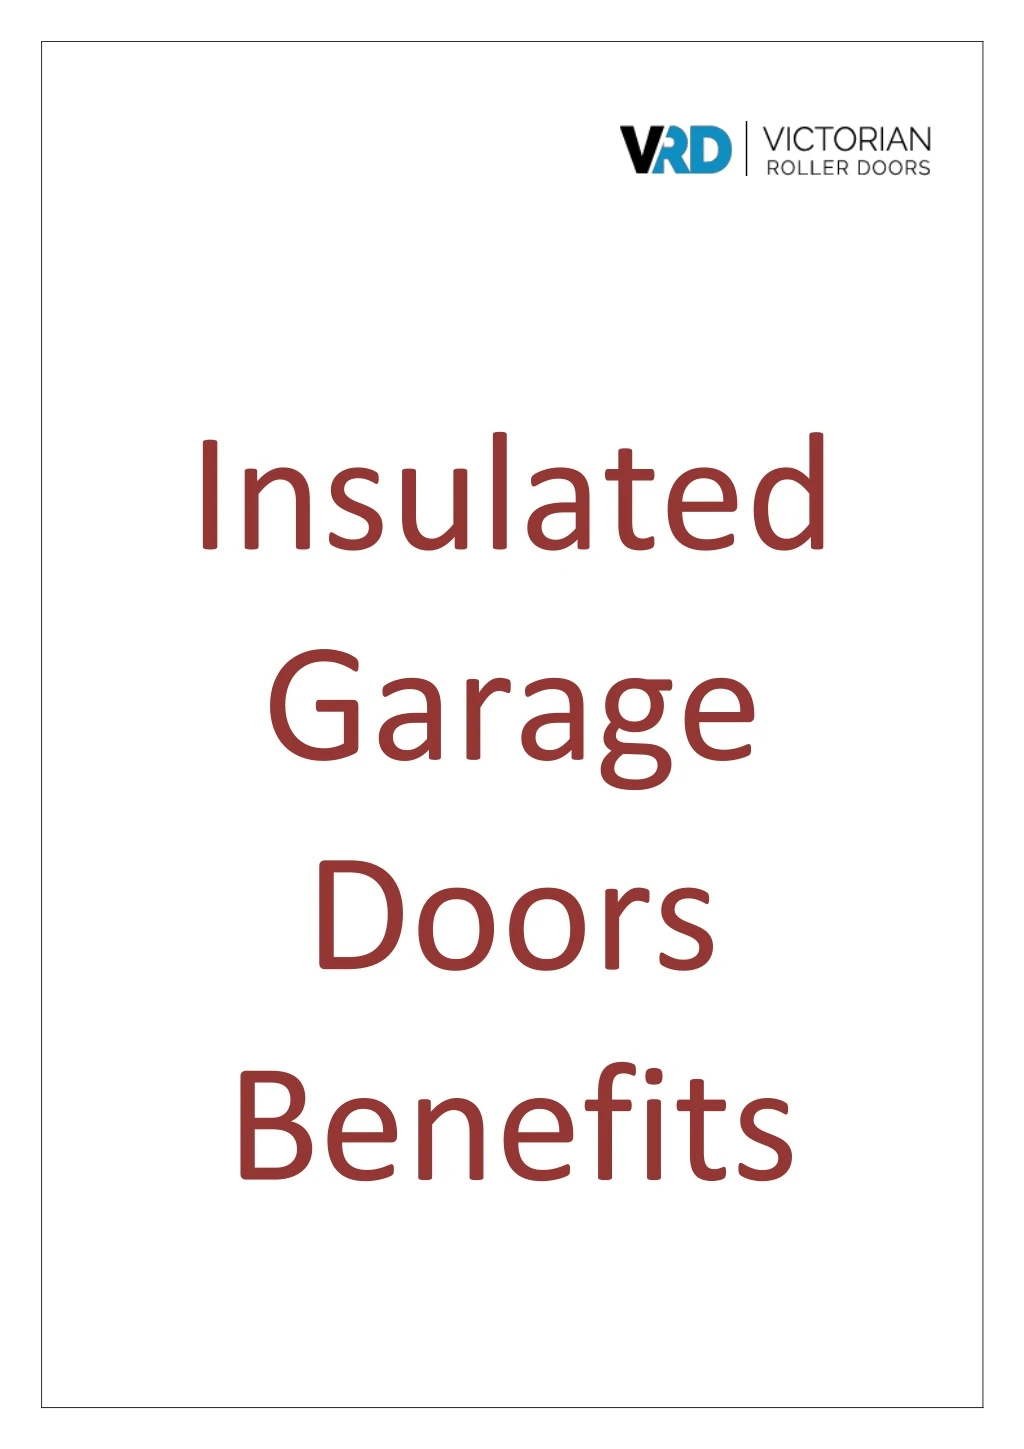 insulated garage doors benefits